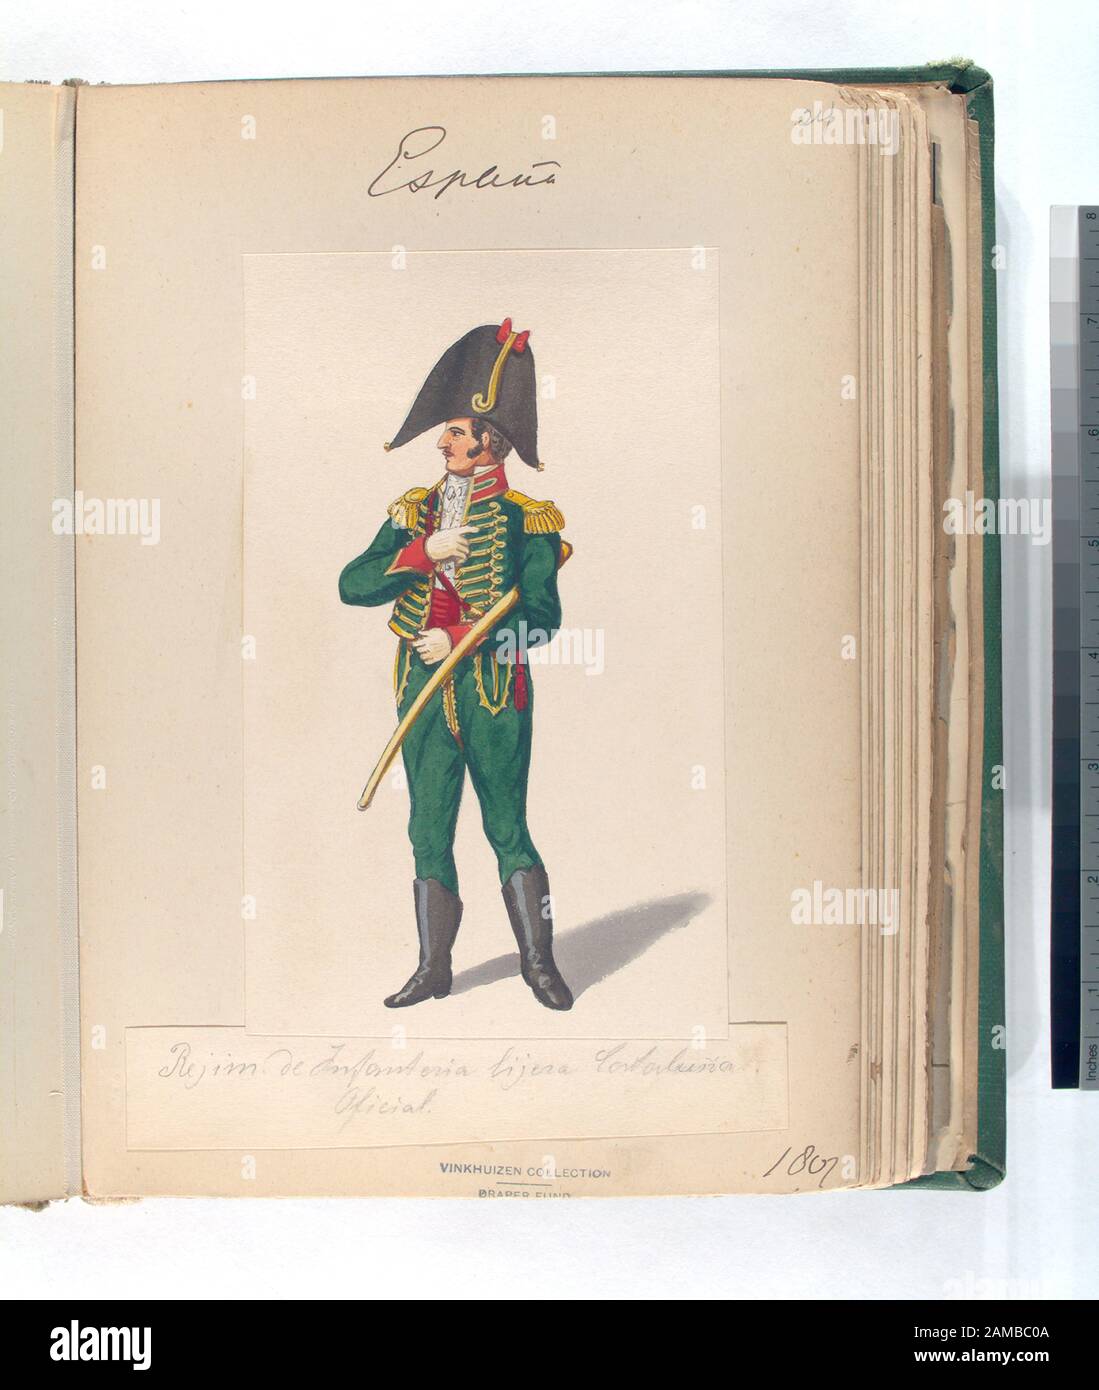 Rejim de Infanteria ligera Cataluña Oficial 1807  Draper Fund; Rejim. de Infanteria ligera Cataluña. Oficial. 1807 Stock Photo